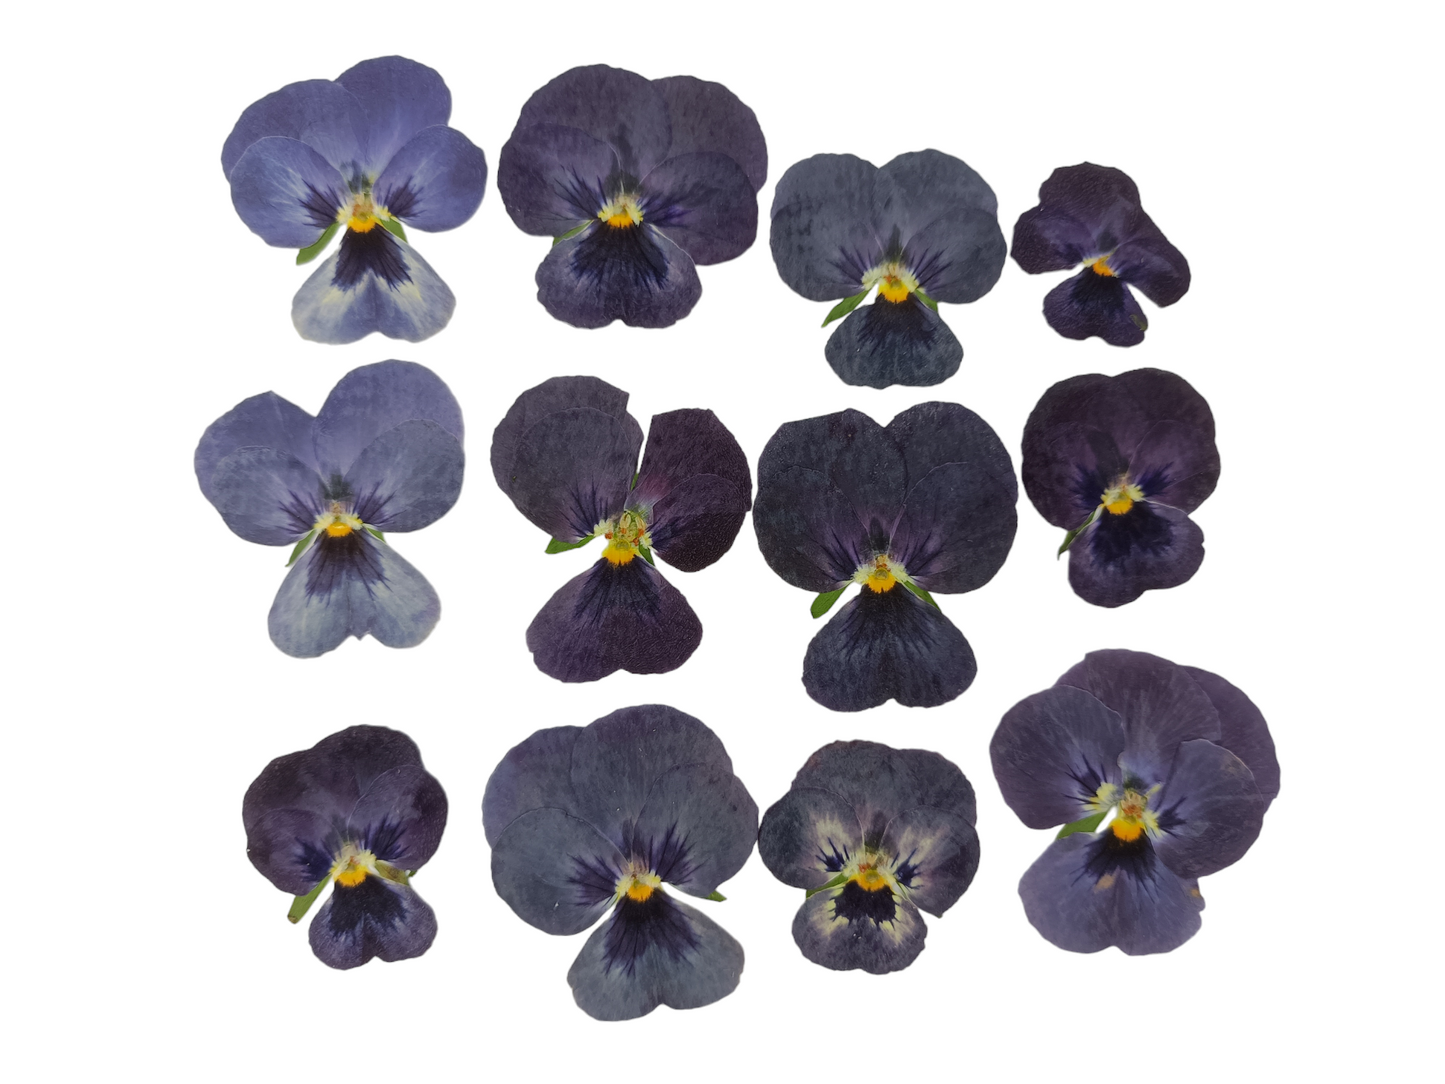 Organic Pressed Edible Flowers - Deep Burgundy Viola Flowers